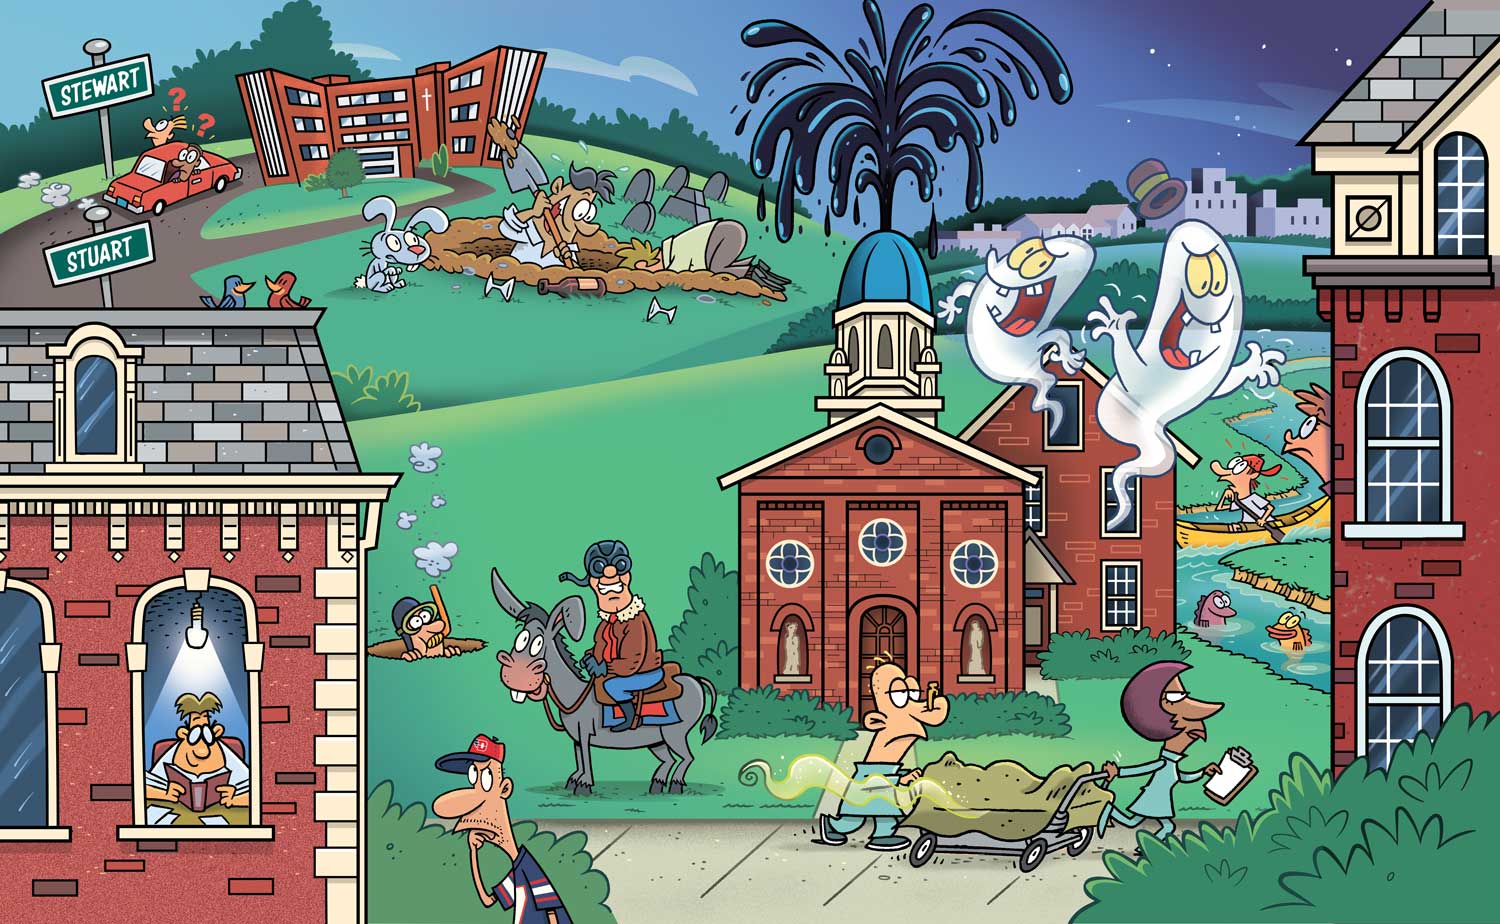 Cartoon look at UD's campus